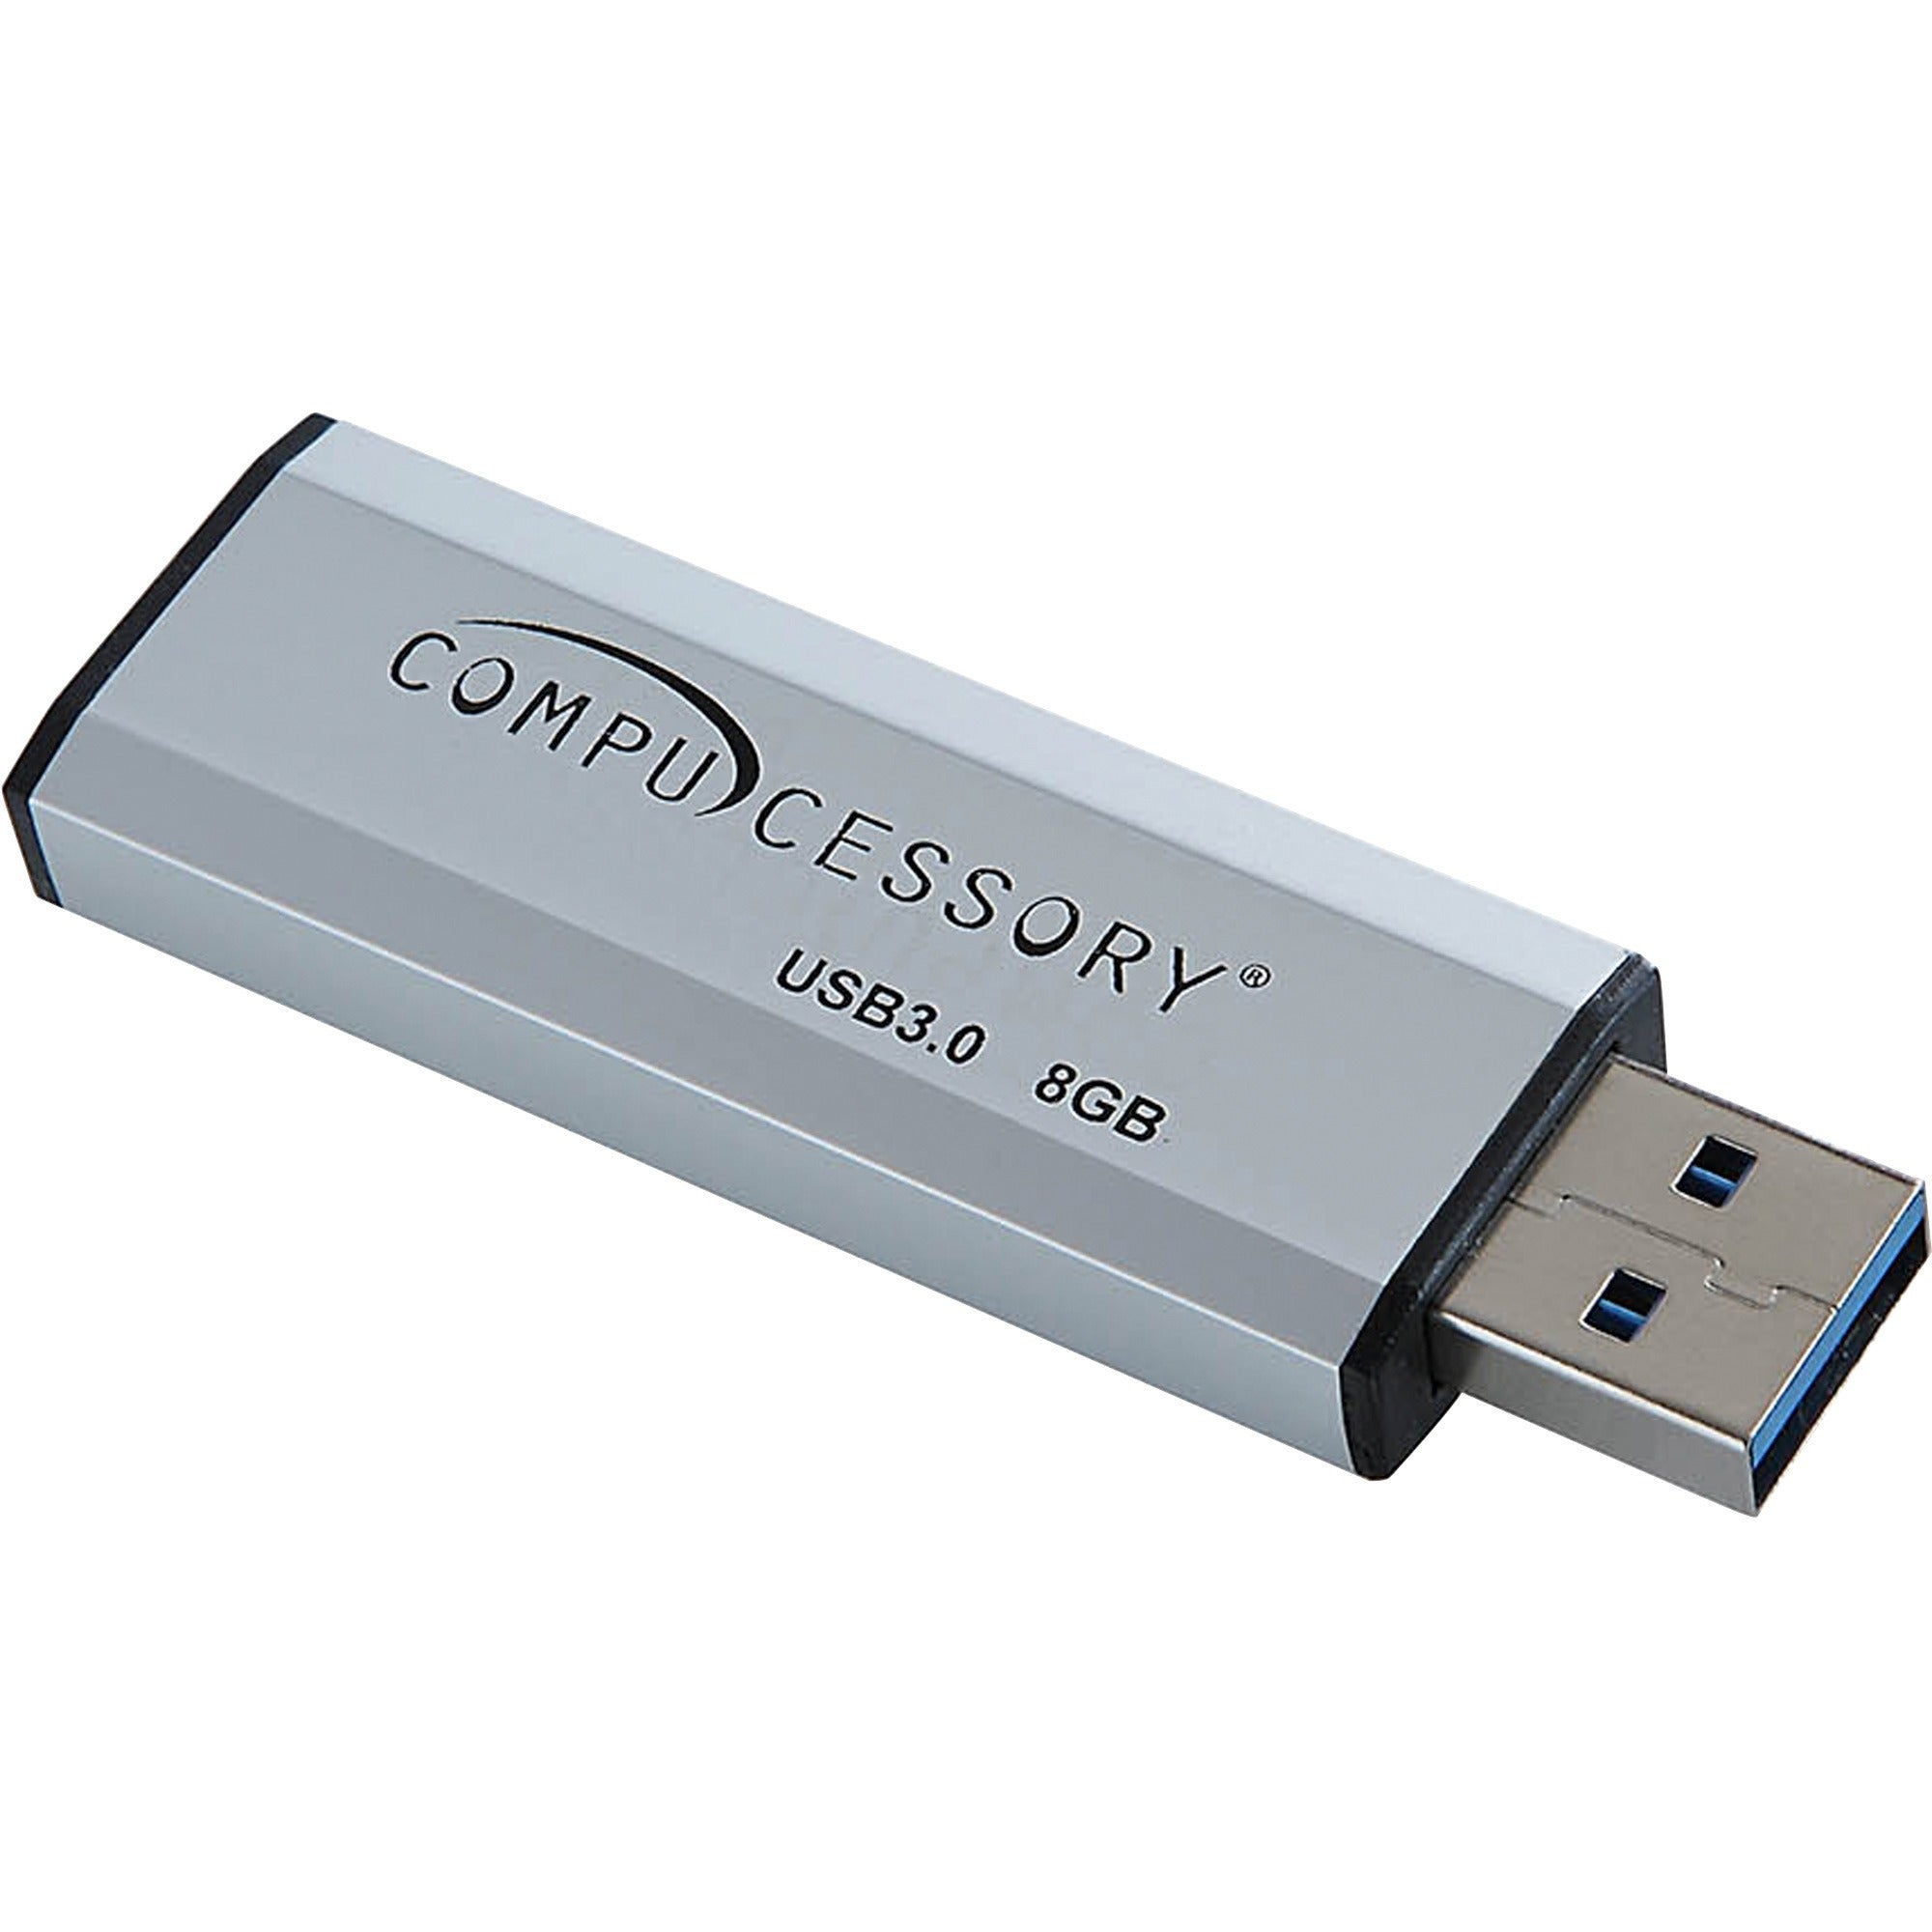 Compucessory 8GB USB 3.0 Flash Drive - 8 GB - USB 3.0 - Silver - 1 Year Warranty - 1 Each